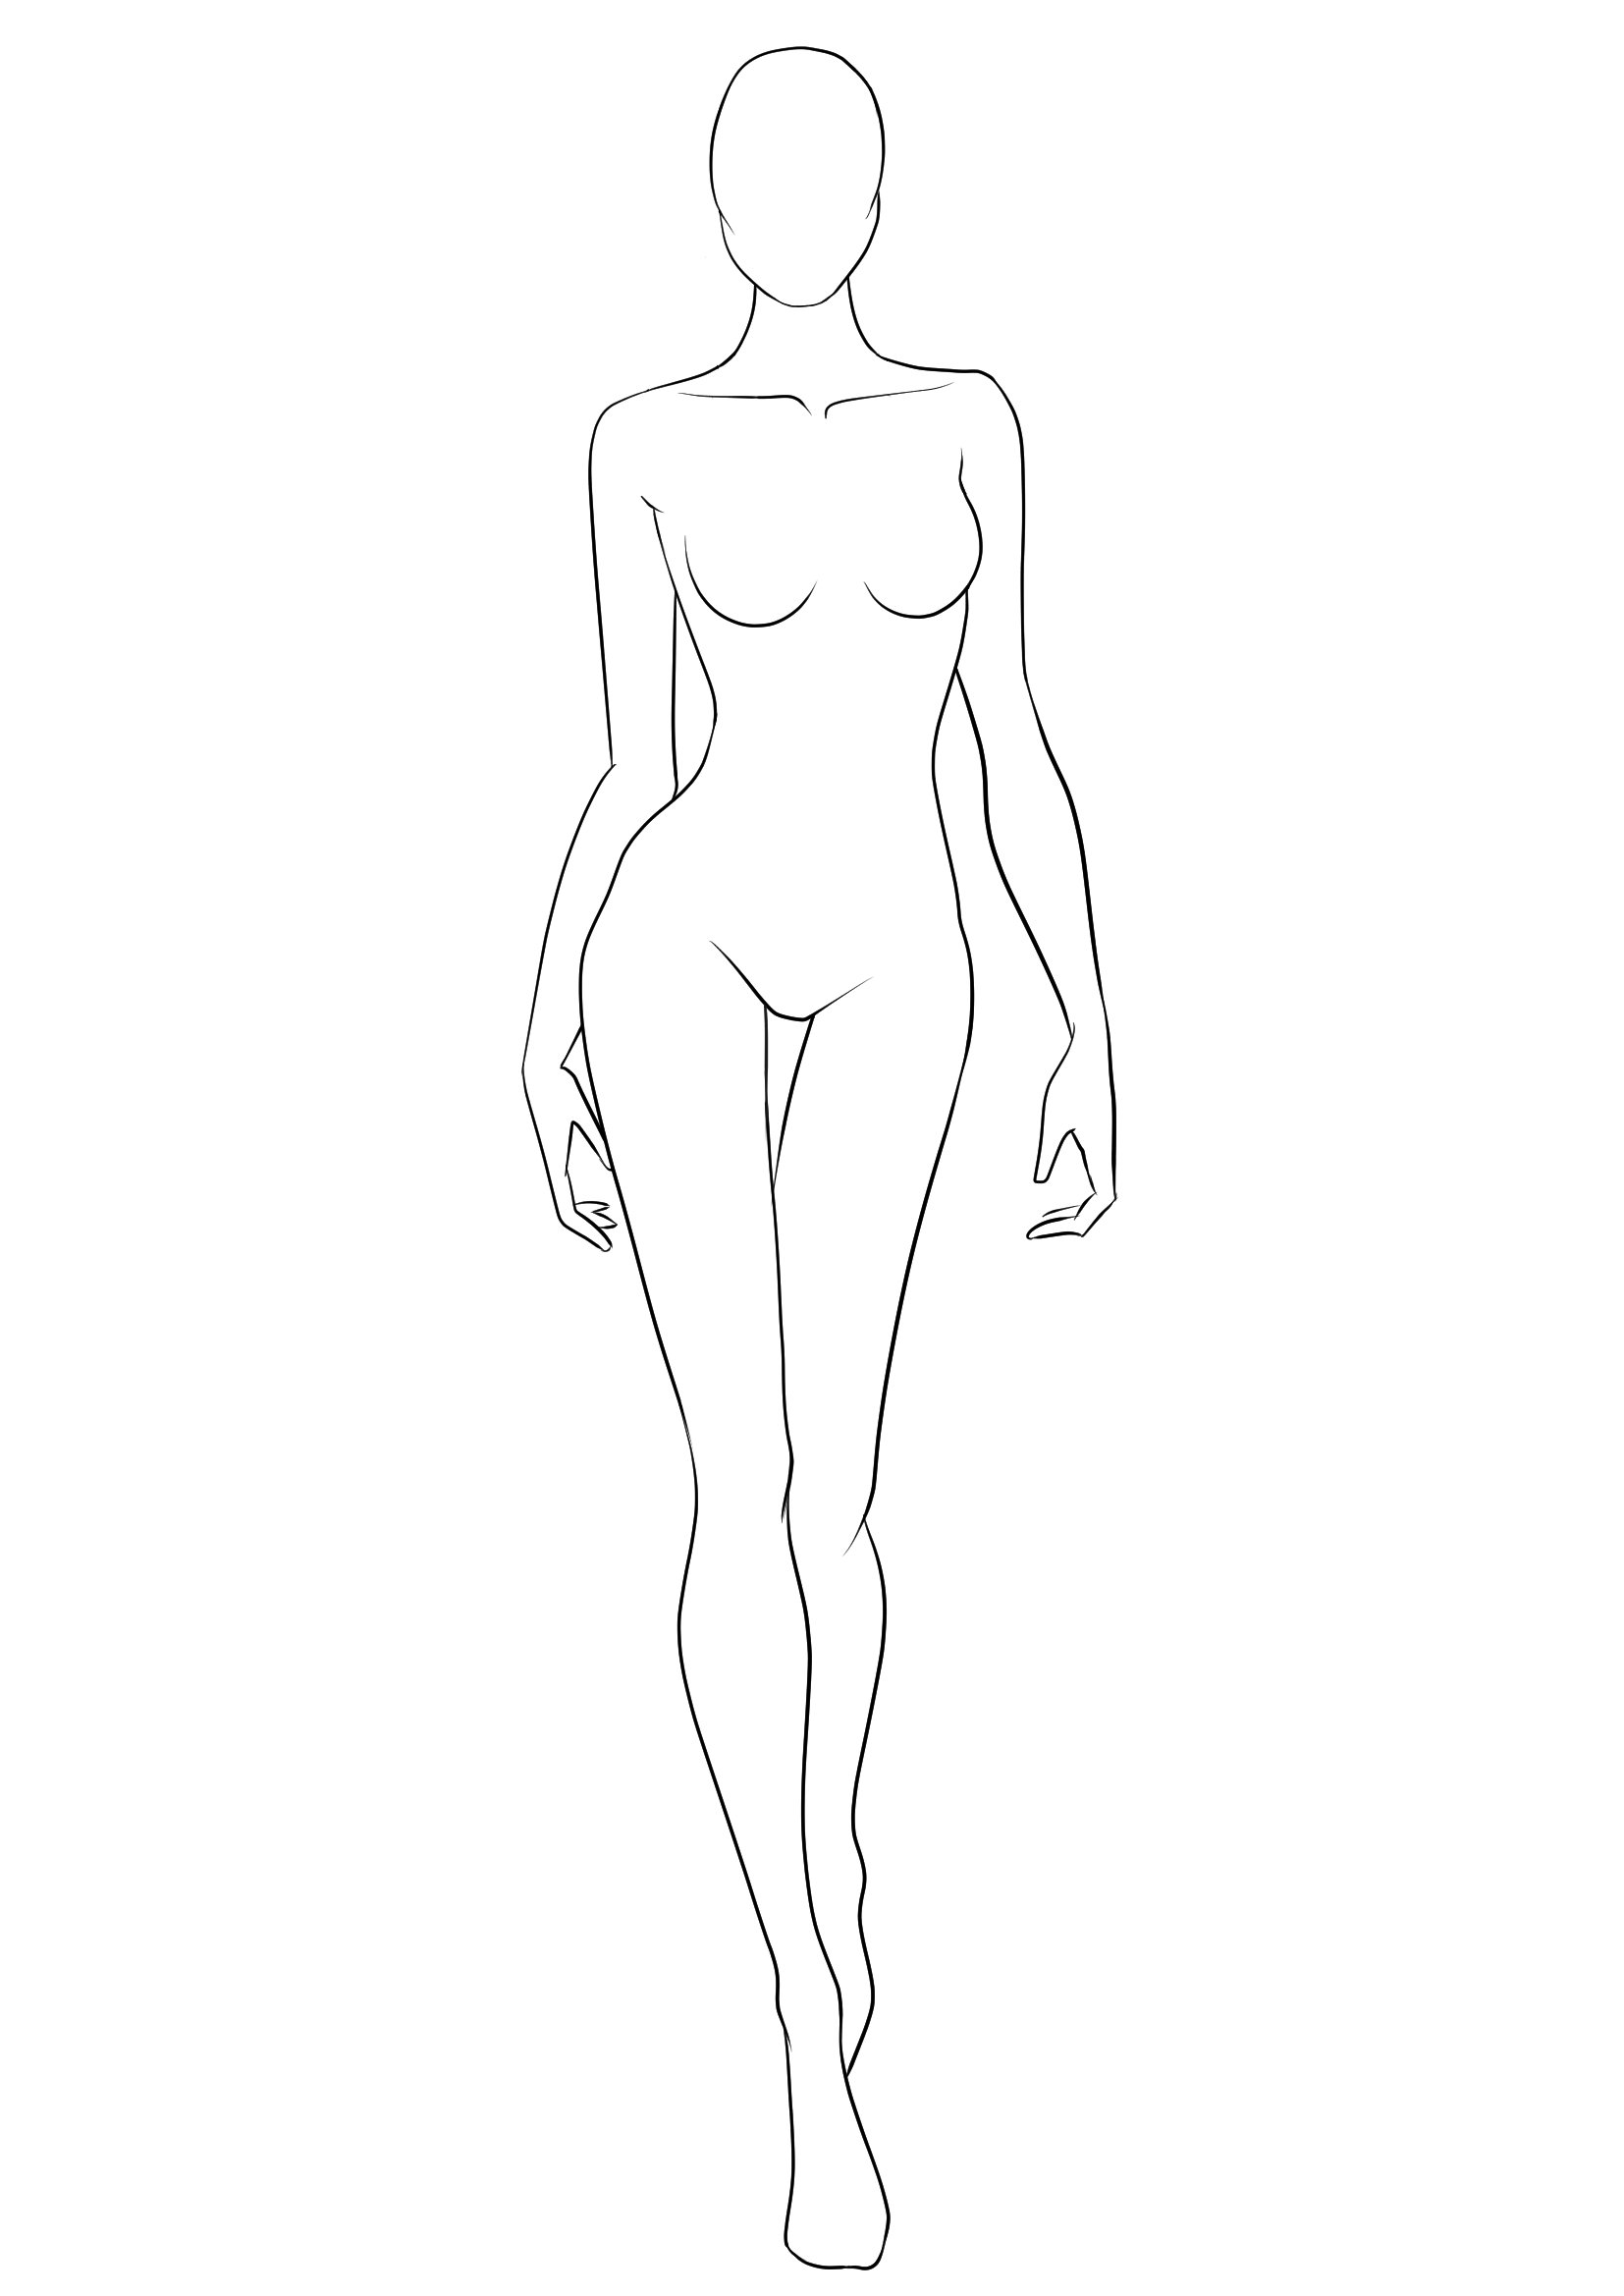 Фигура для рисования одежды